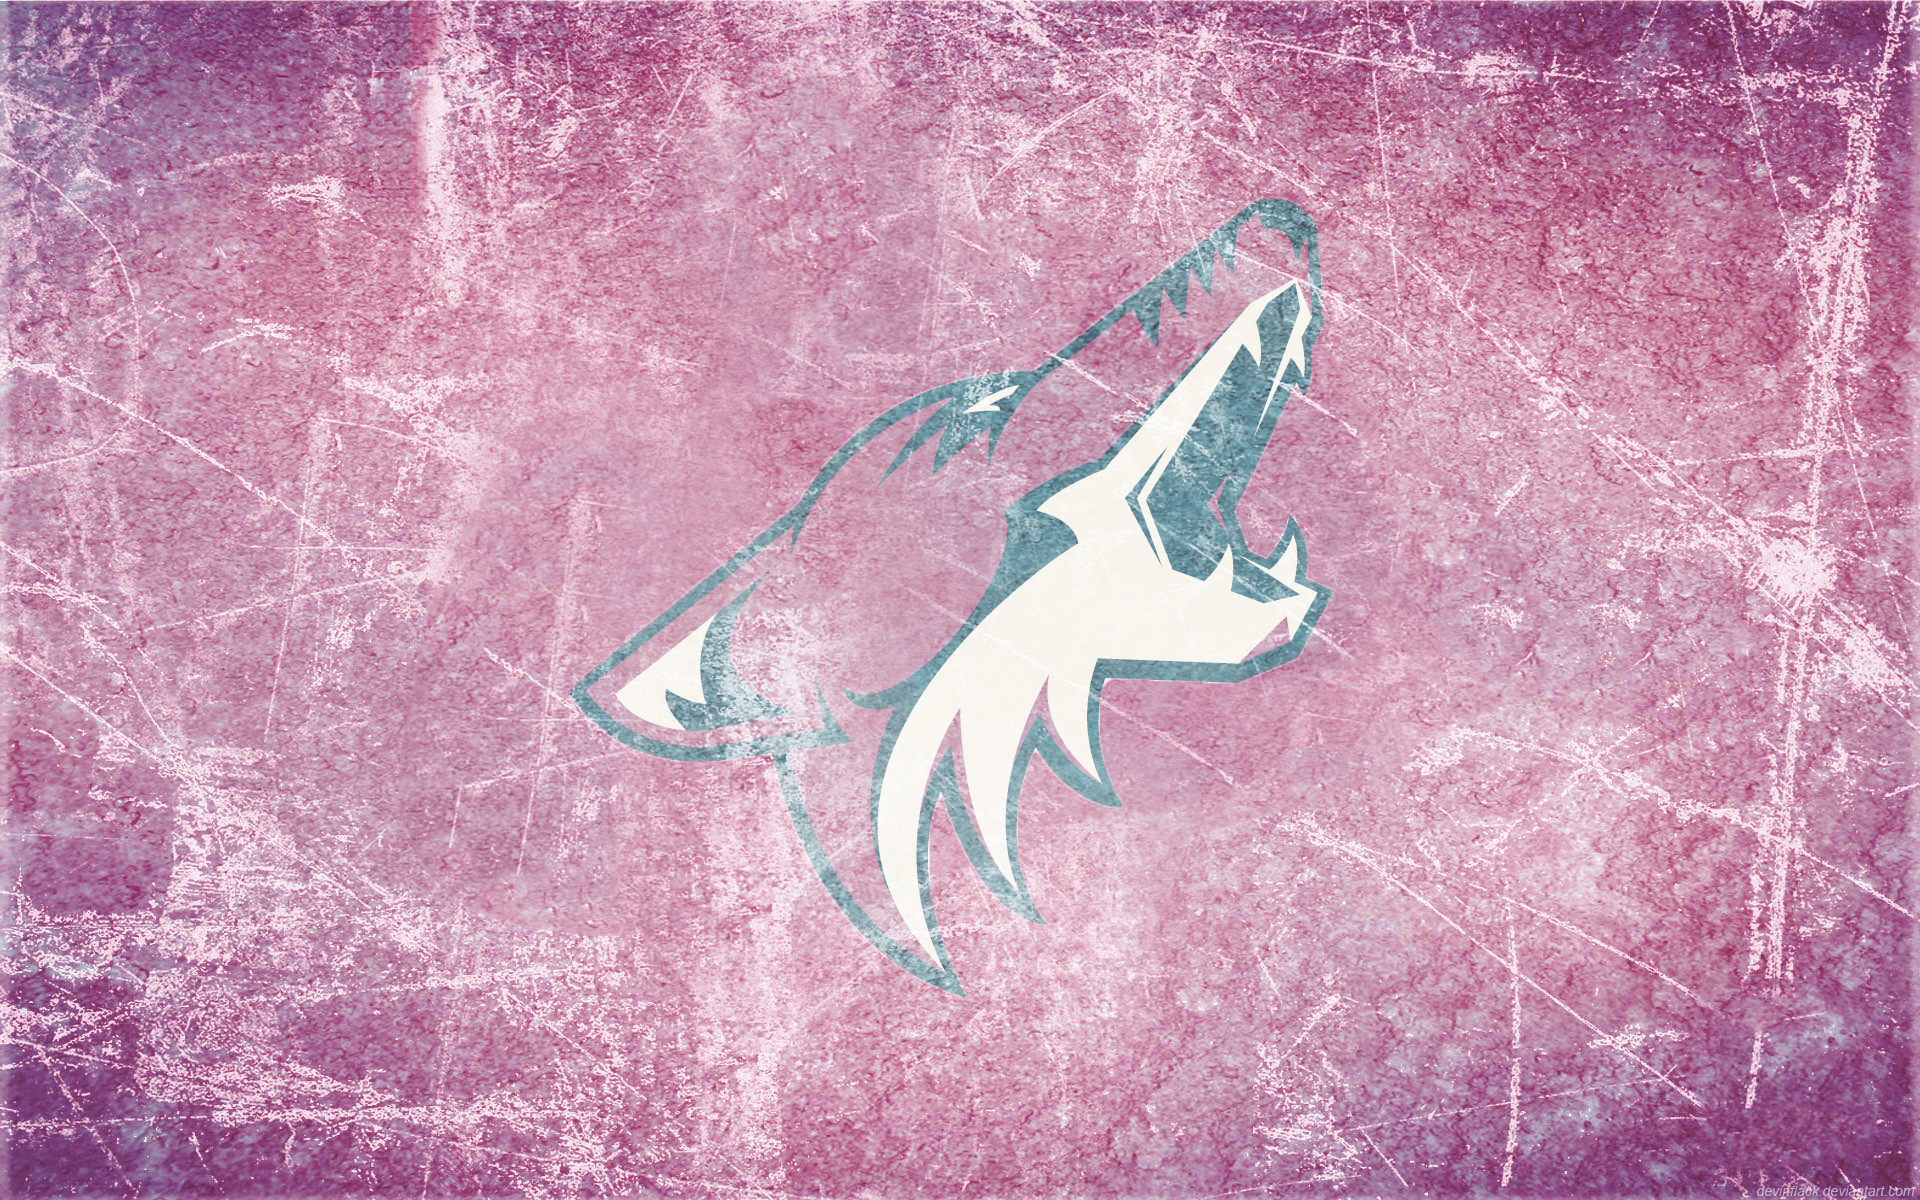 Arizona Coyotes Wallpaper